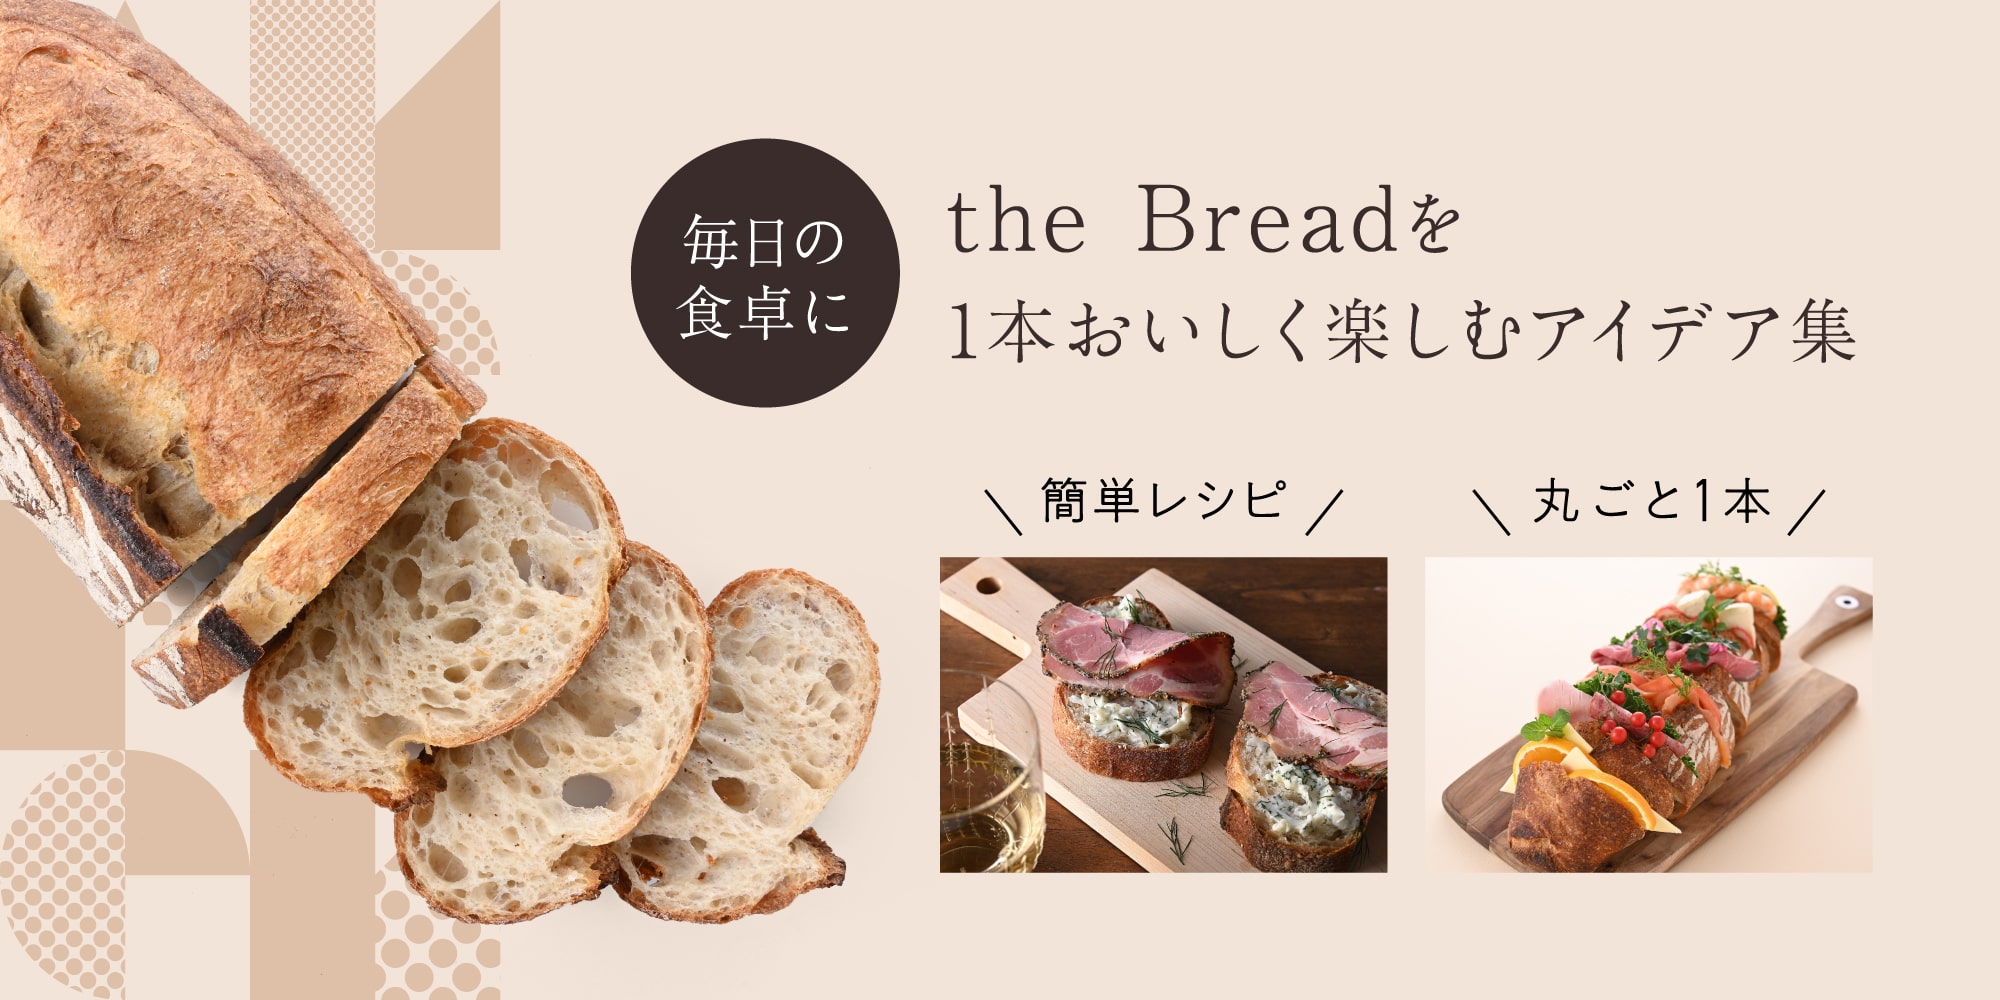 the Breadを1本おいしく楽しむアイデア集